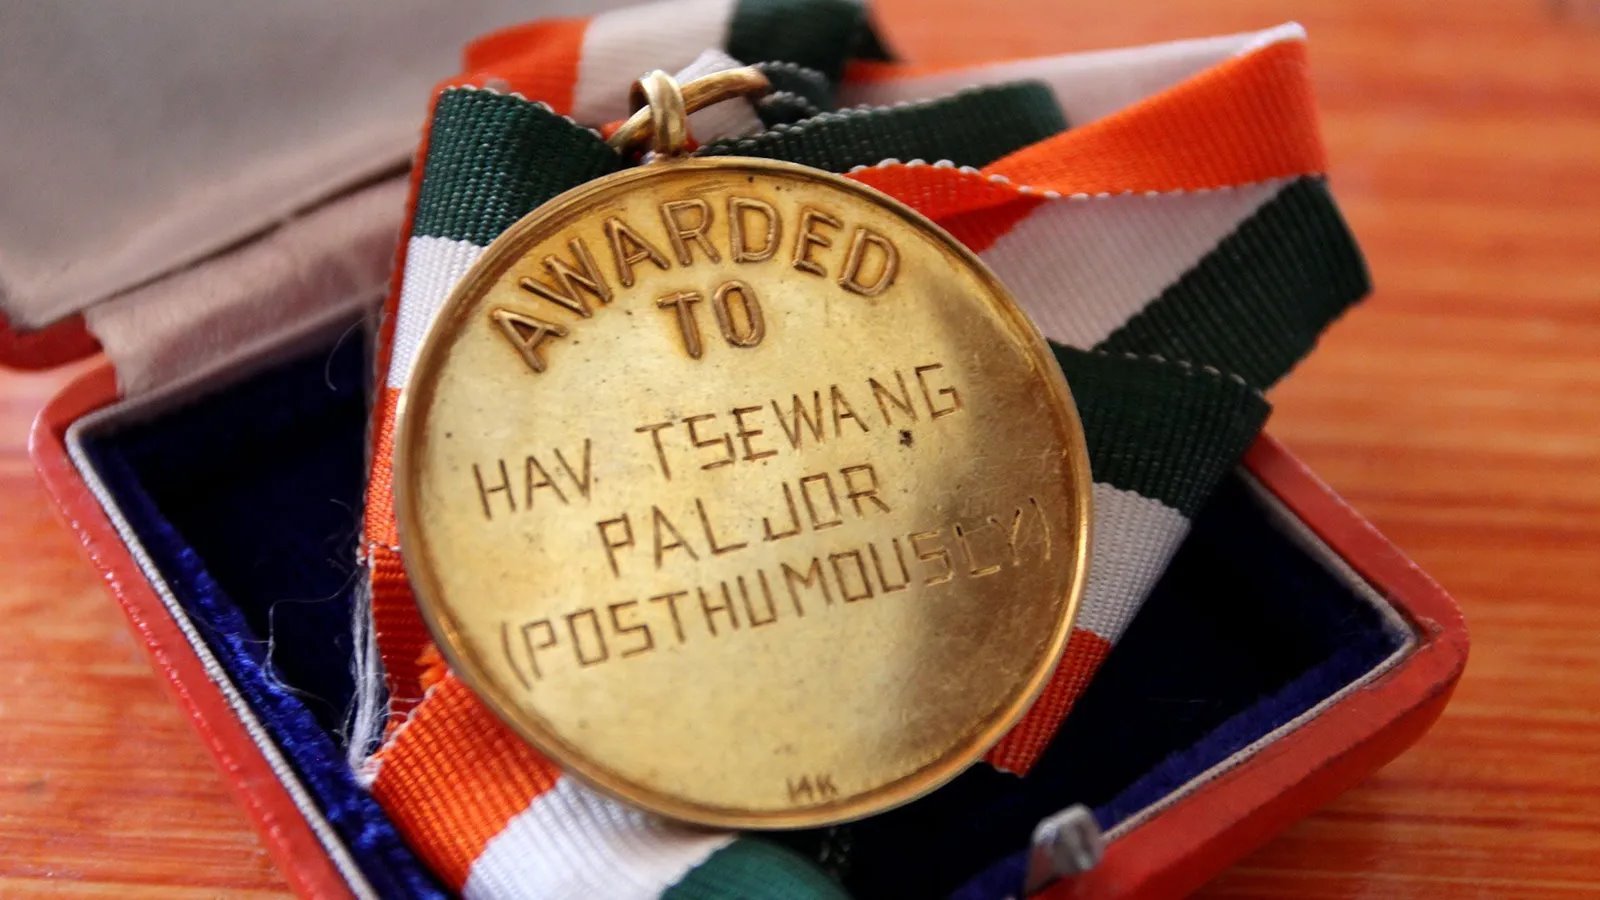 Medalja dodeljena posle Paldžorove smrti